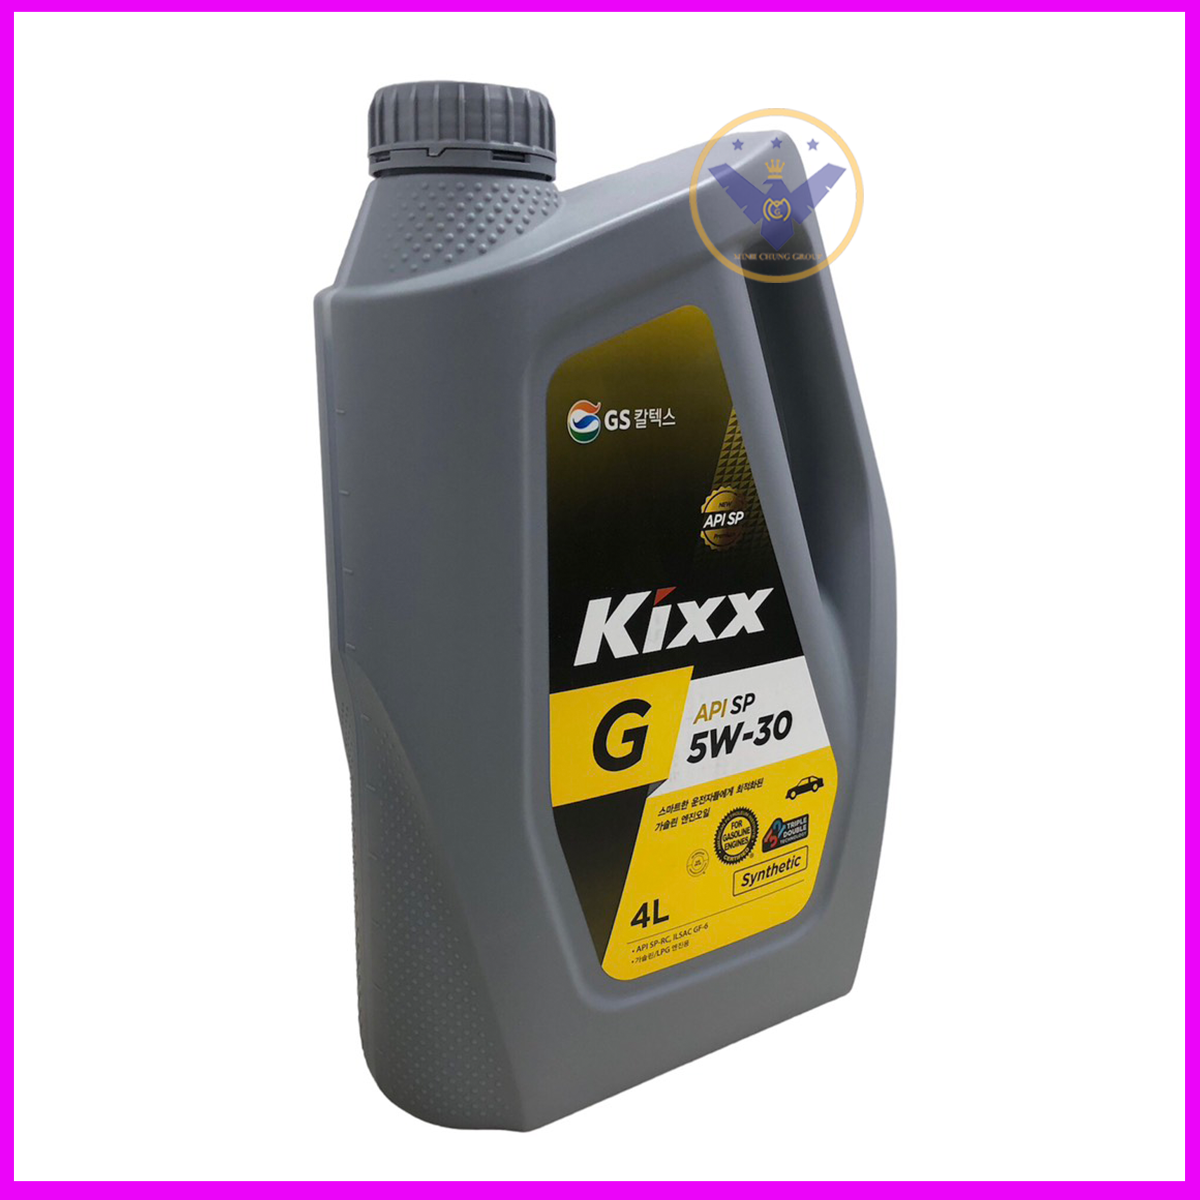 Dầu nhớt ô tô tổng hợp Kixx G API SP 5W30 nhập khẩu Hàn Quốc can 4L + Súc nhớt Liqui Moly 500ML